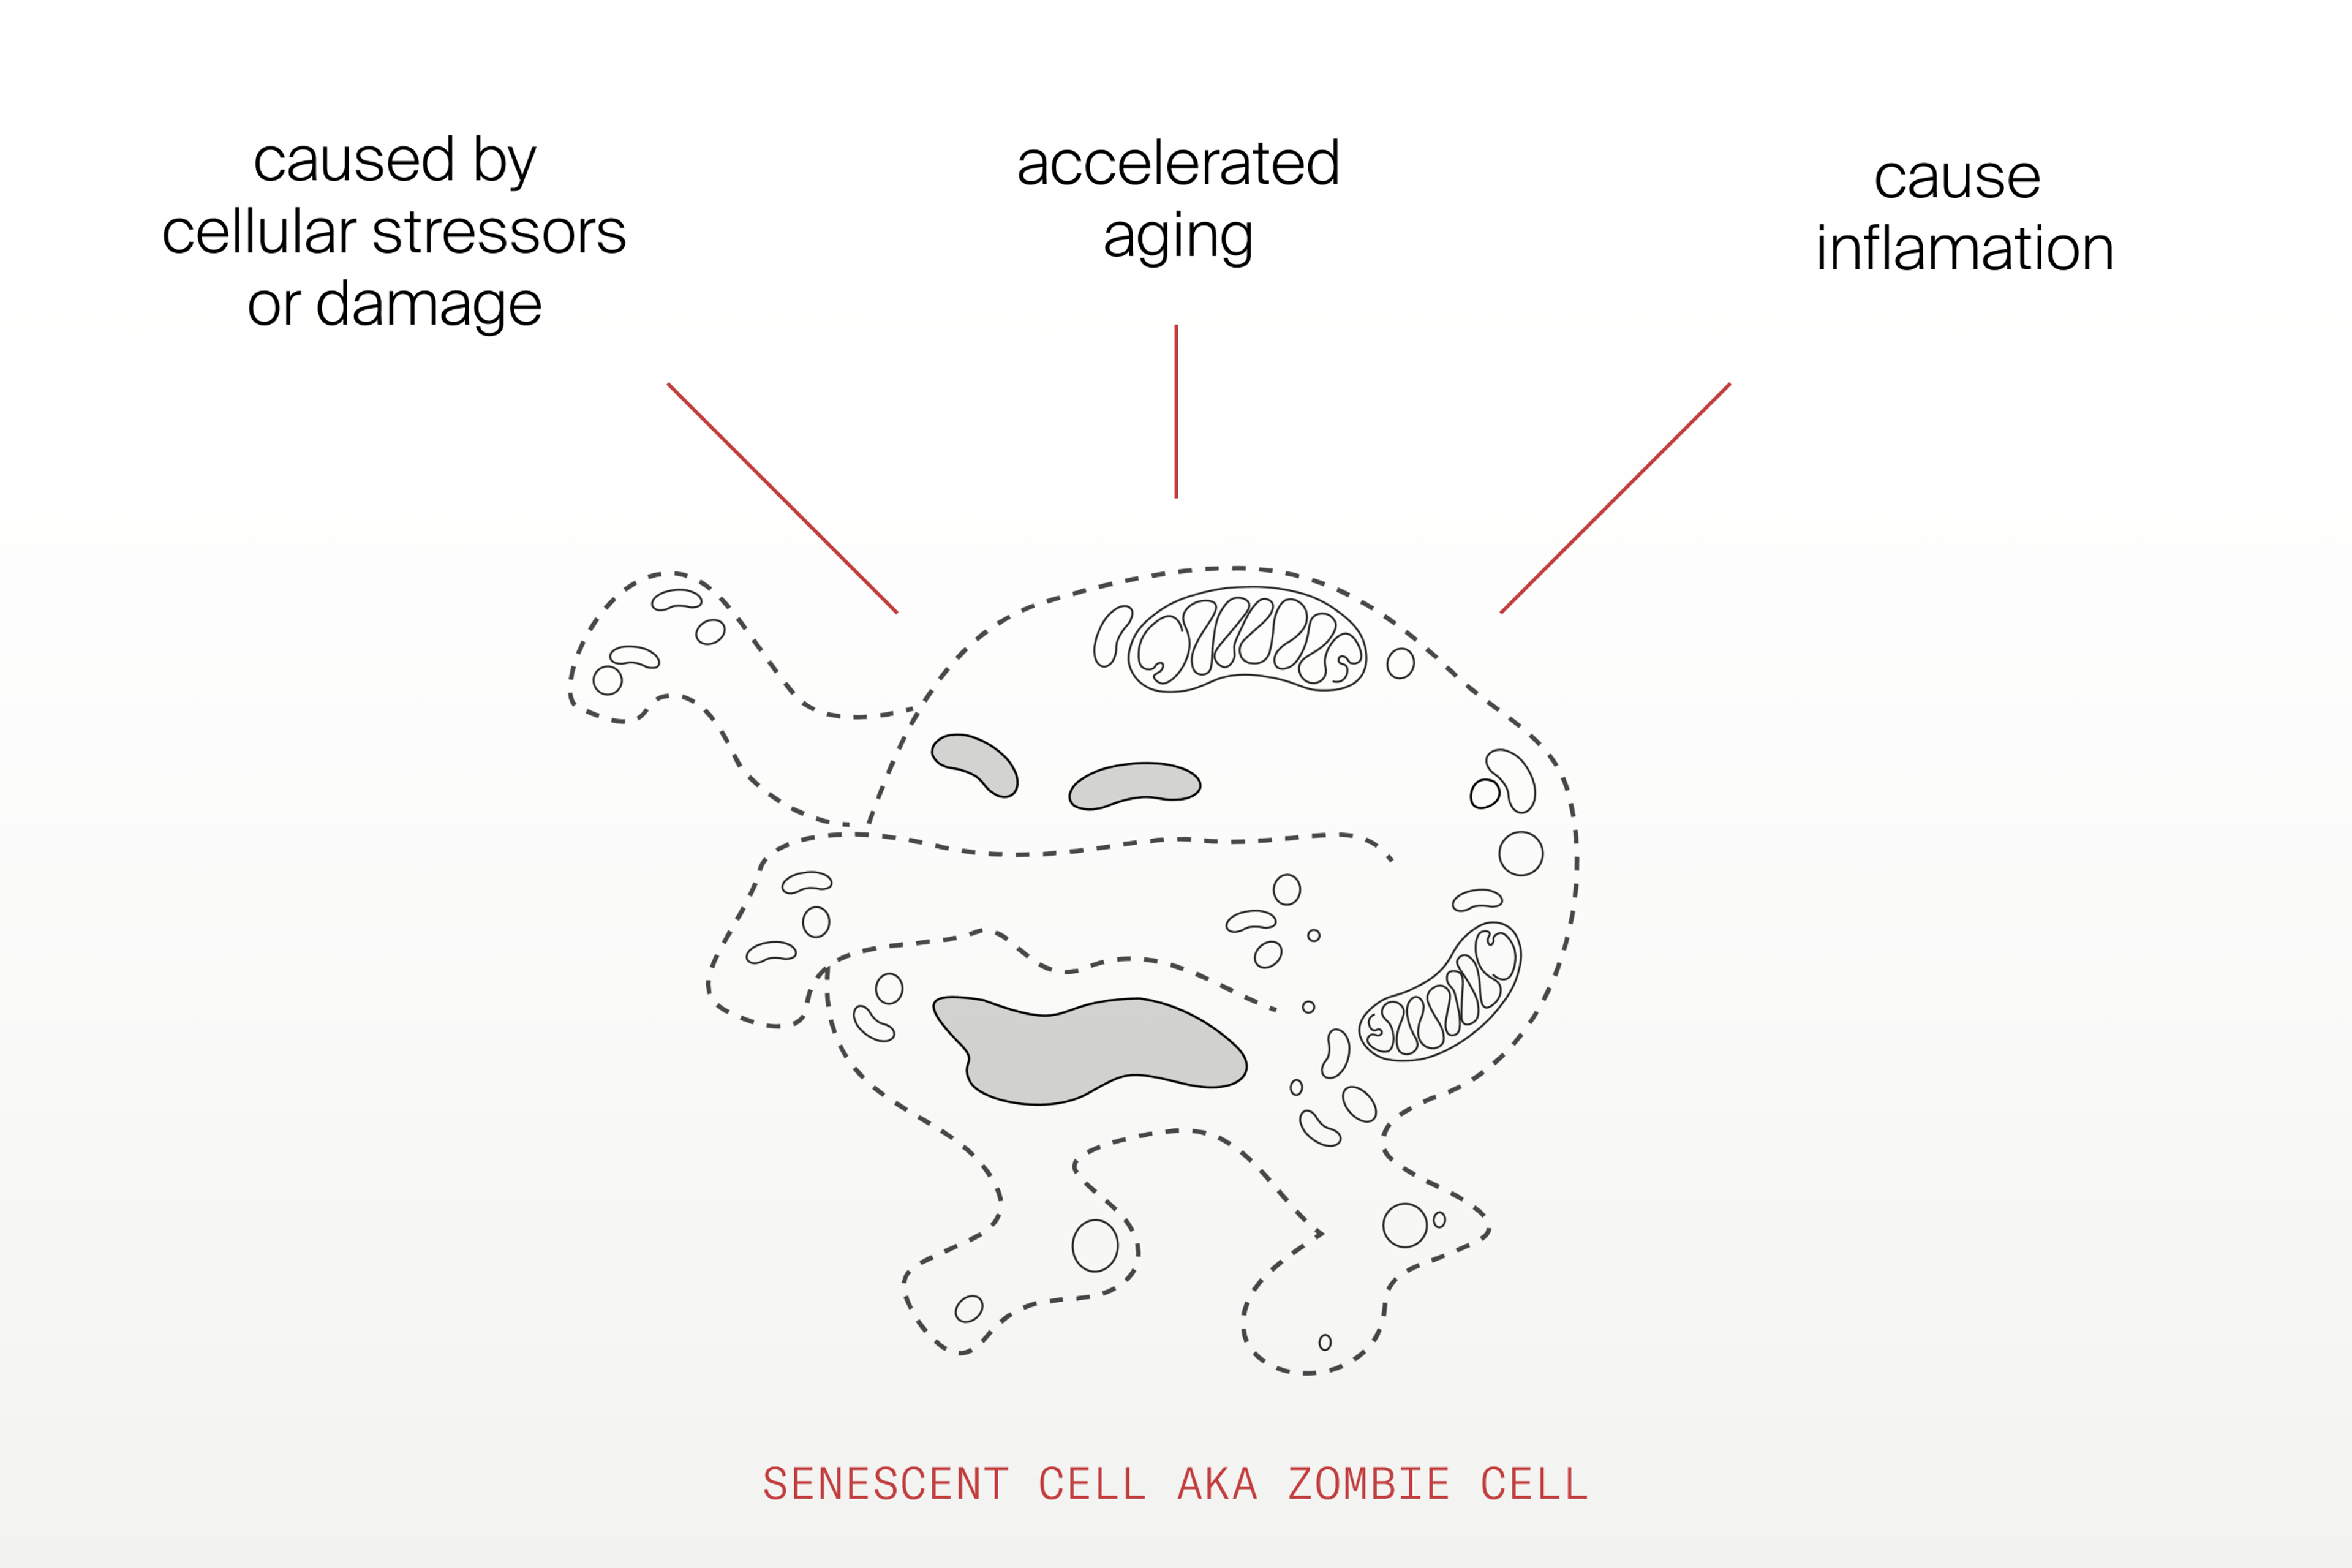 Senescent cells